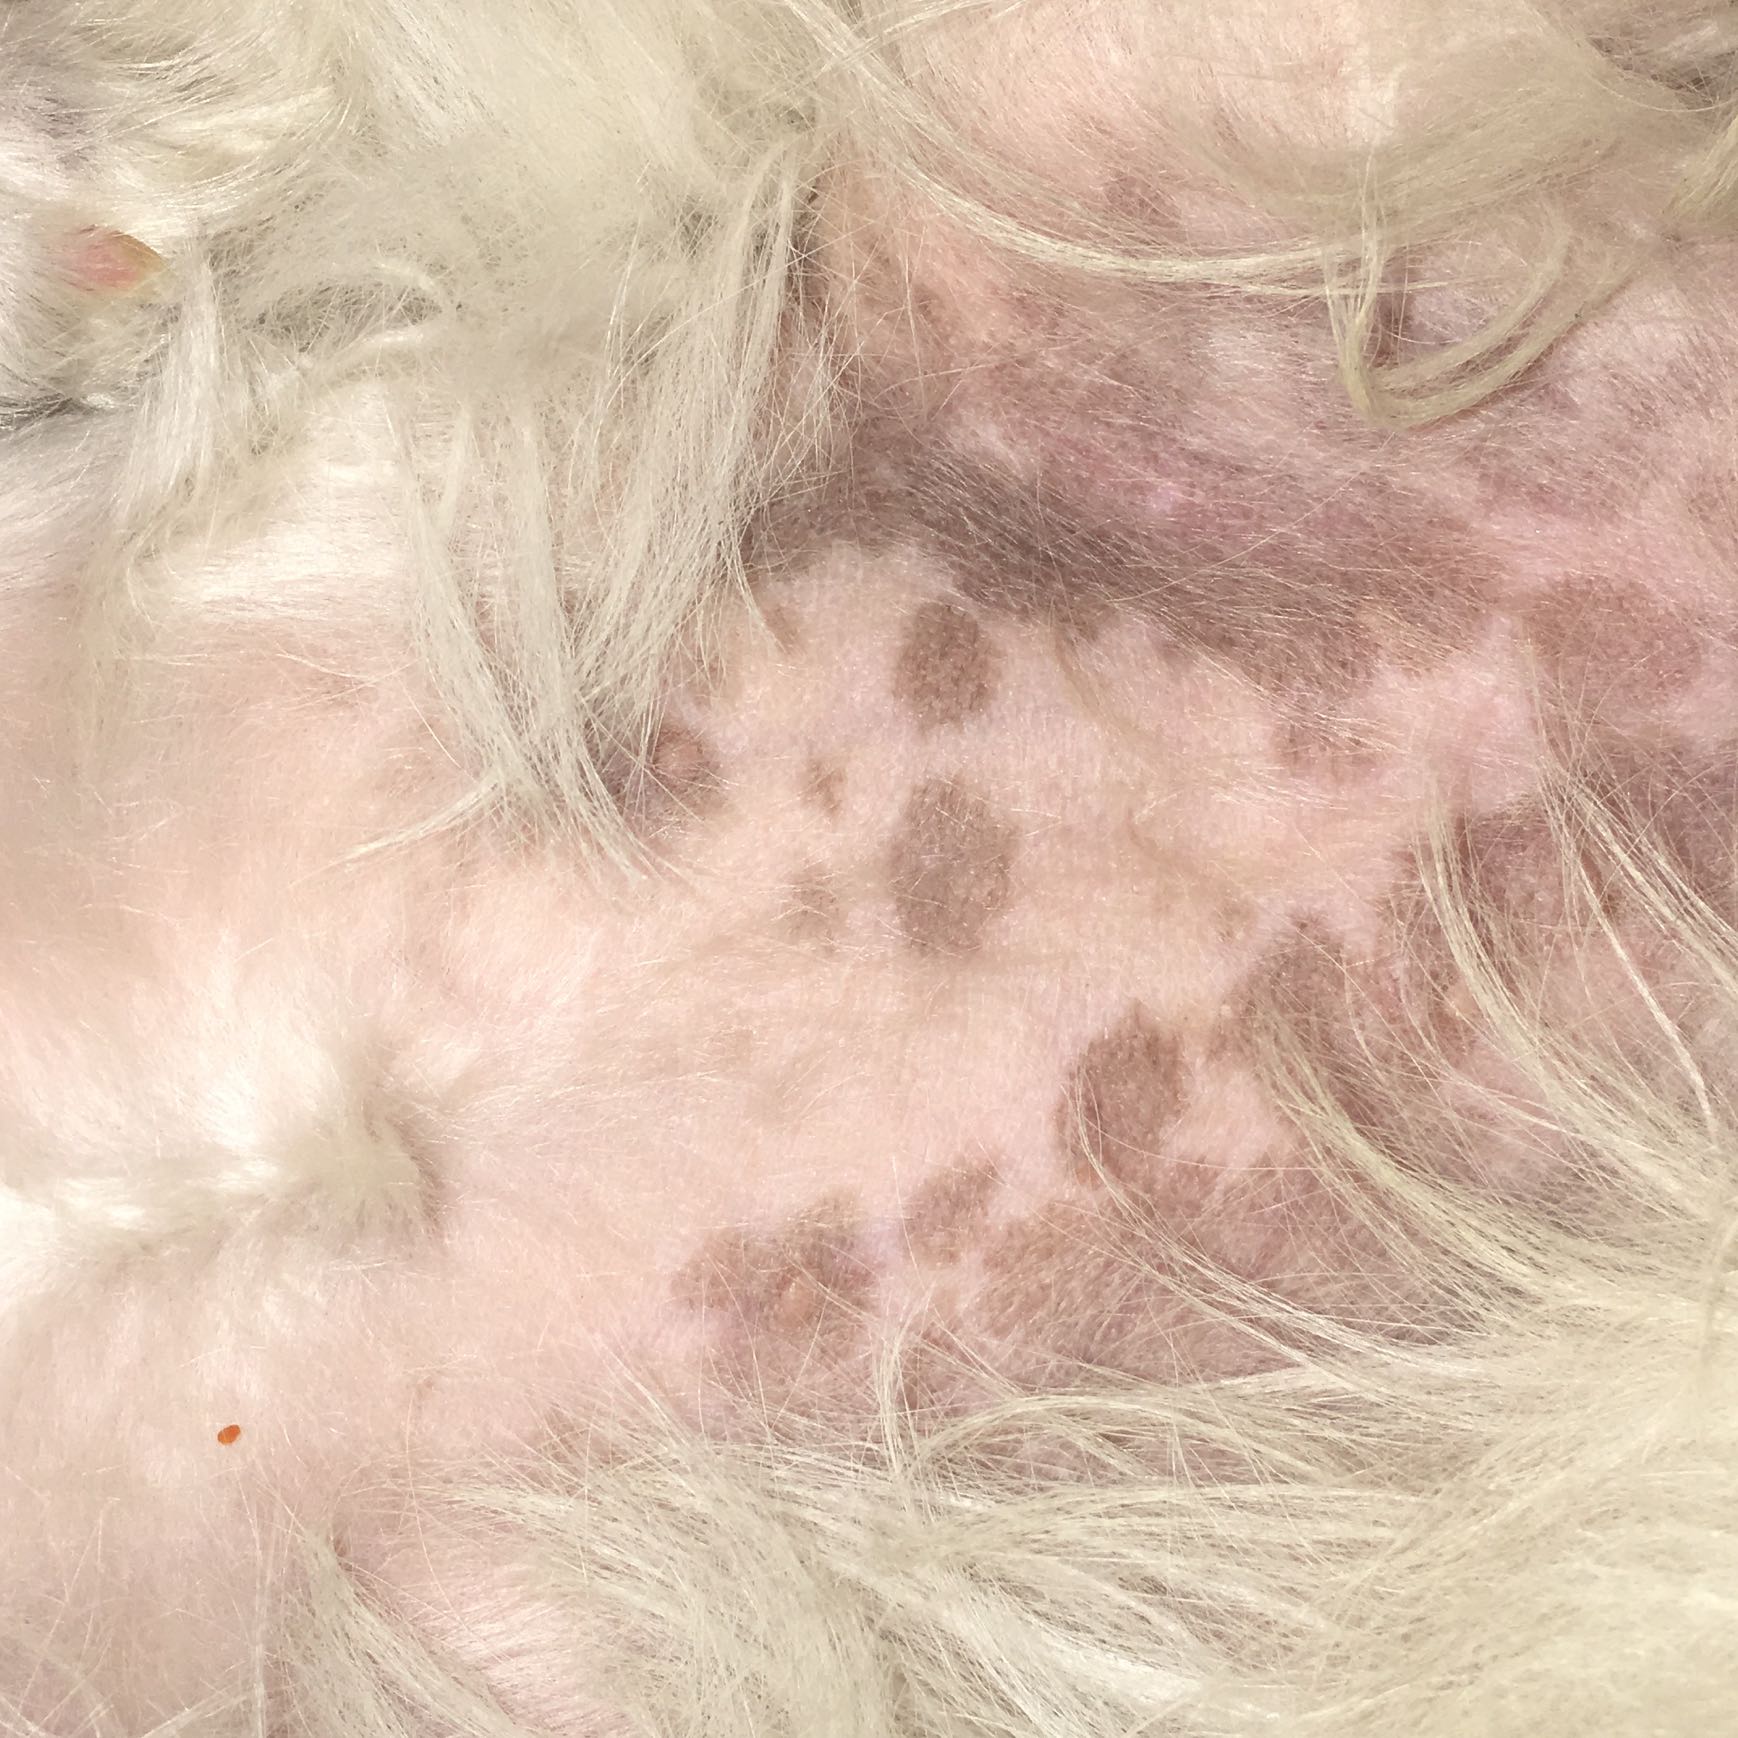 Dunkle Flecken am Bauch meines Hundes? (Gesundheit, Hund)